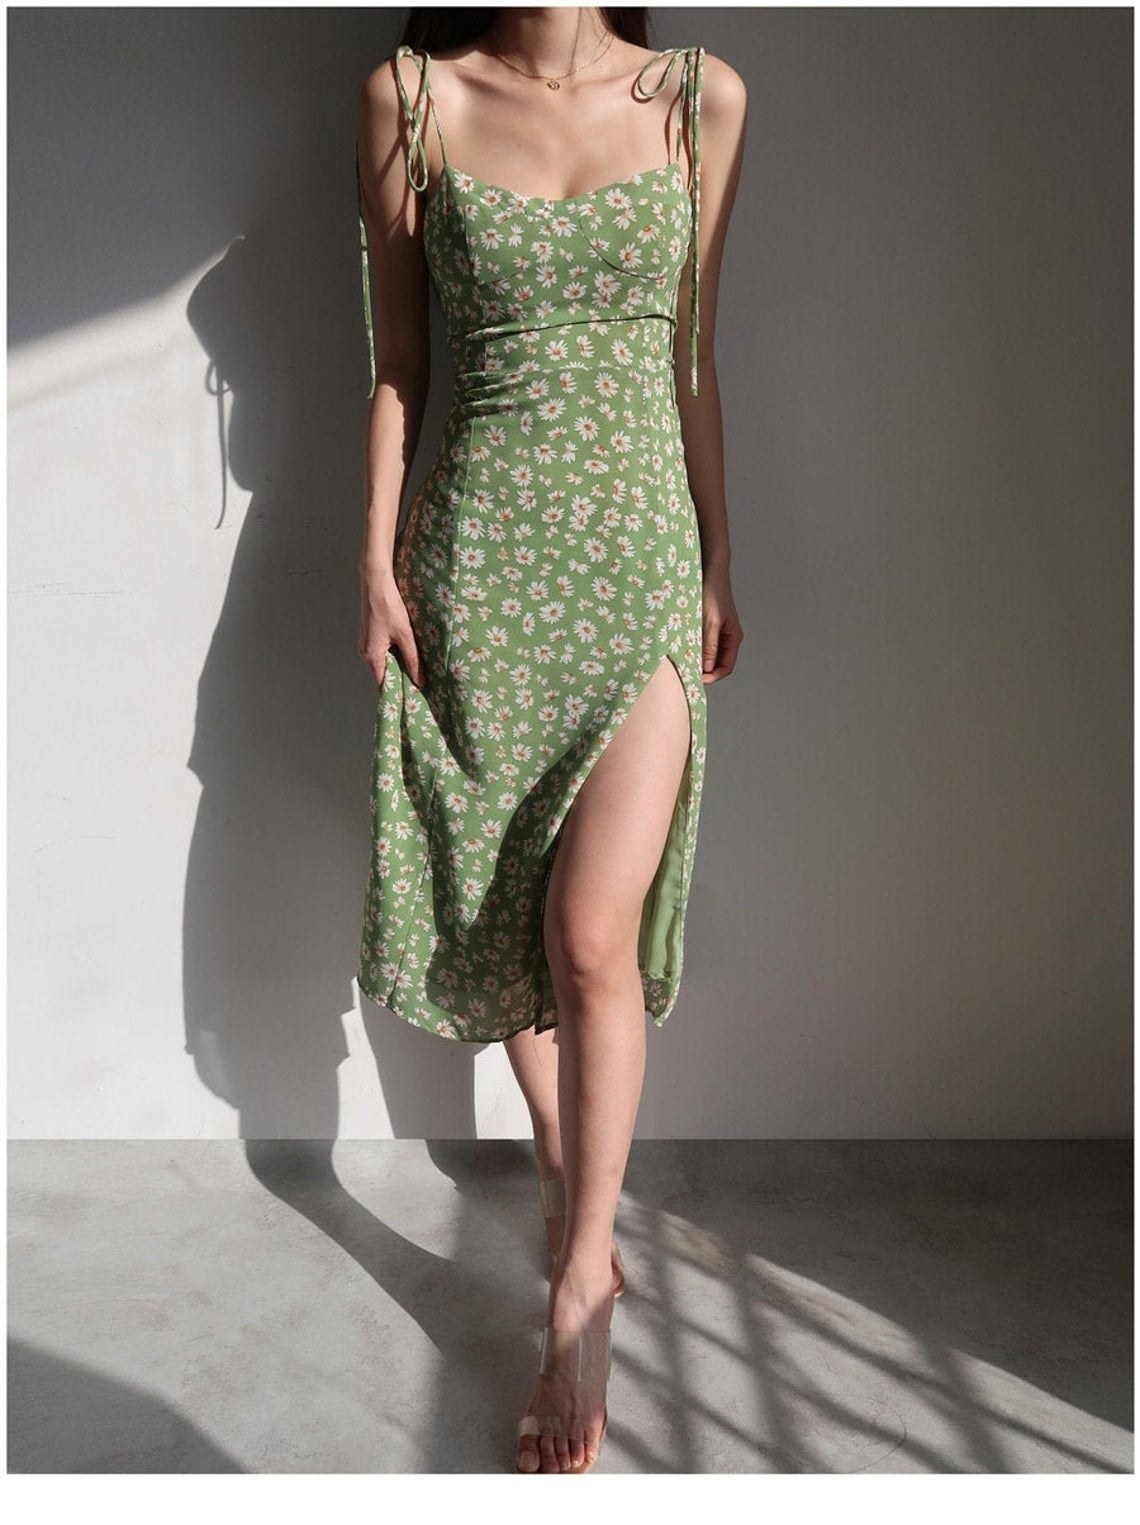 Model wearing the dress in green